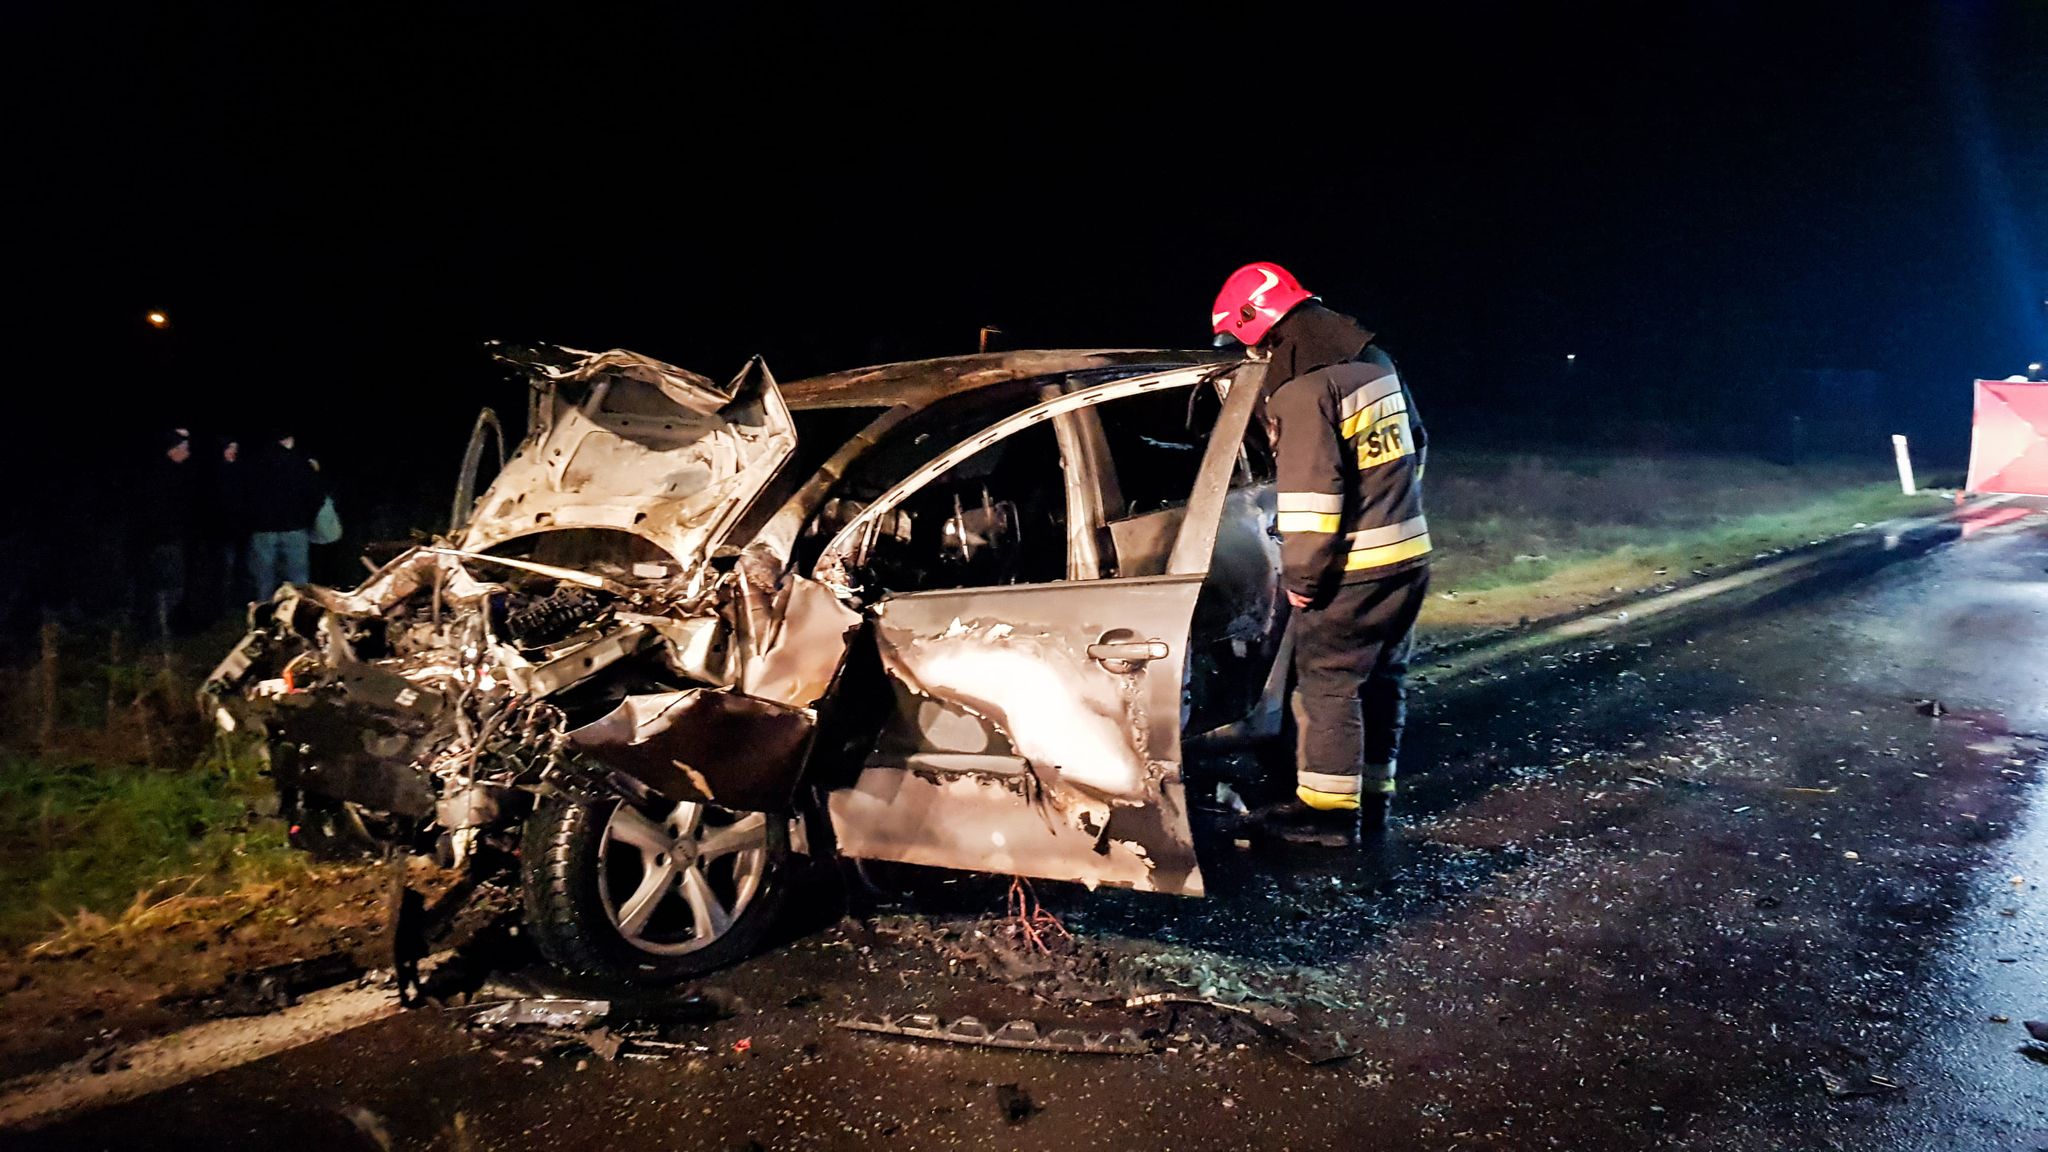 Prokuratura wyjaśni okoliczności śmierci kierowcy z nocnego pościgu! - Zdjęcie główne